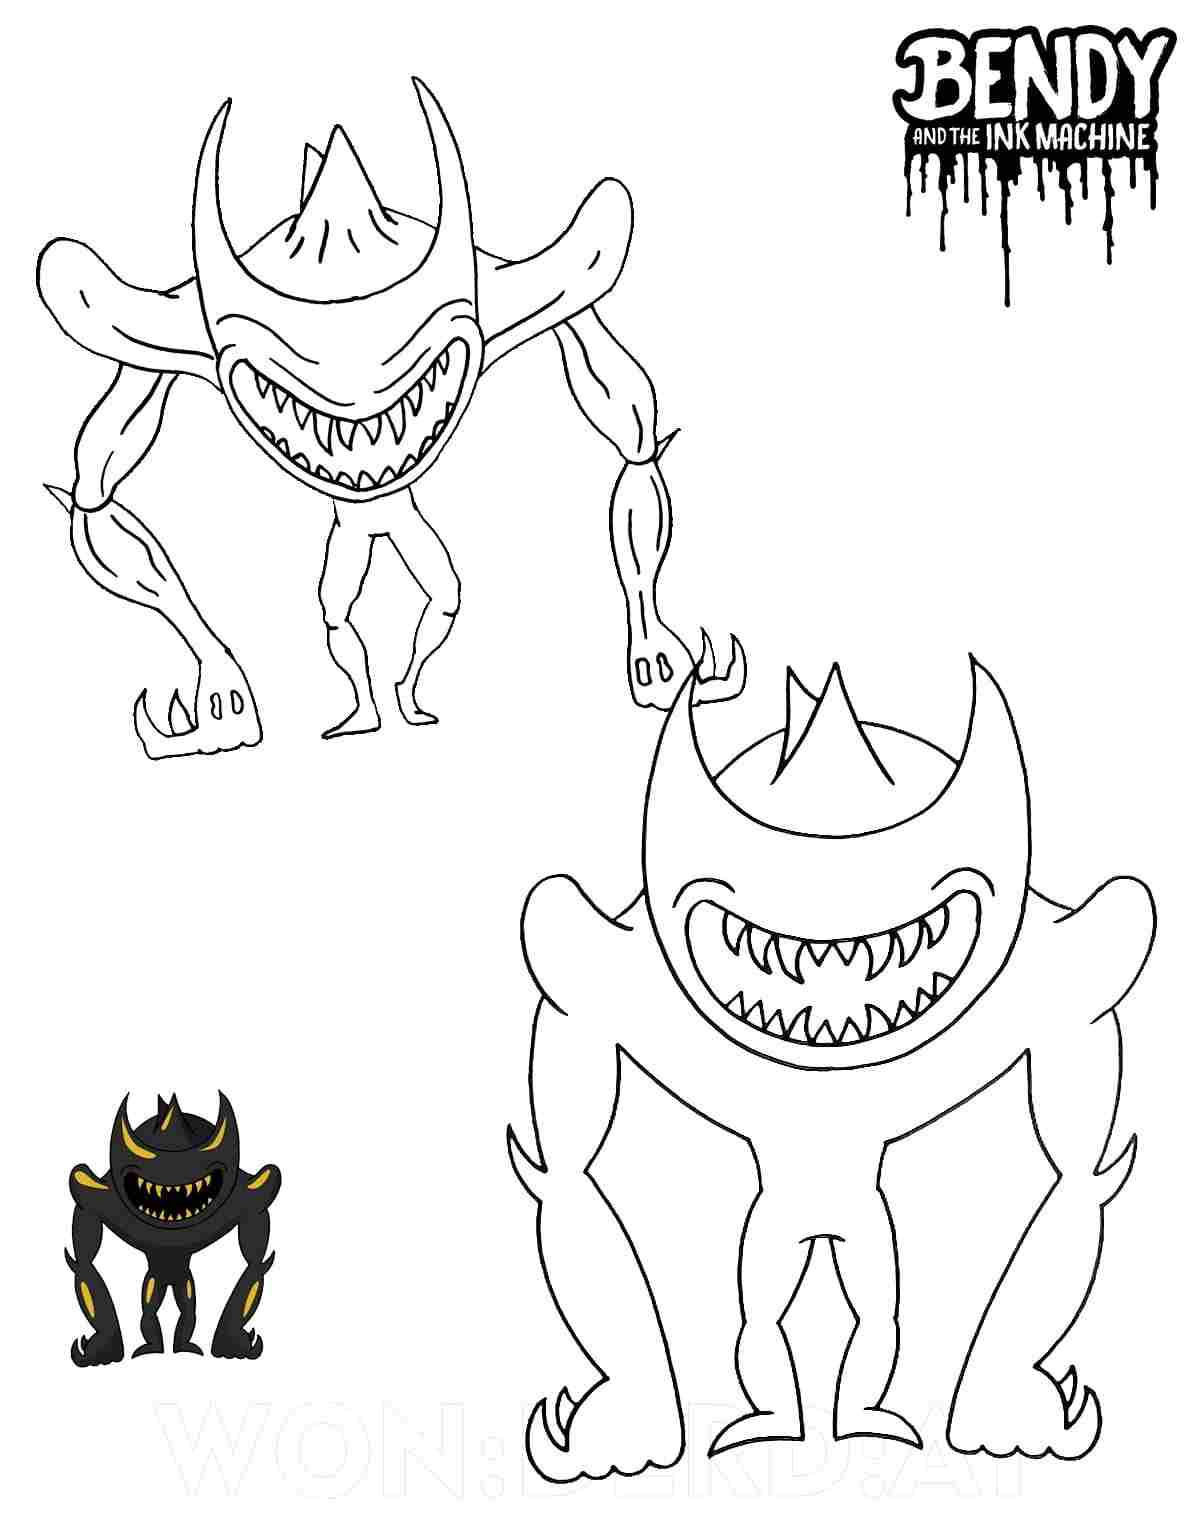 Демонический зверь Бенди, последний босс игры «Бенди и чернильная машина» из игры «Бенди».